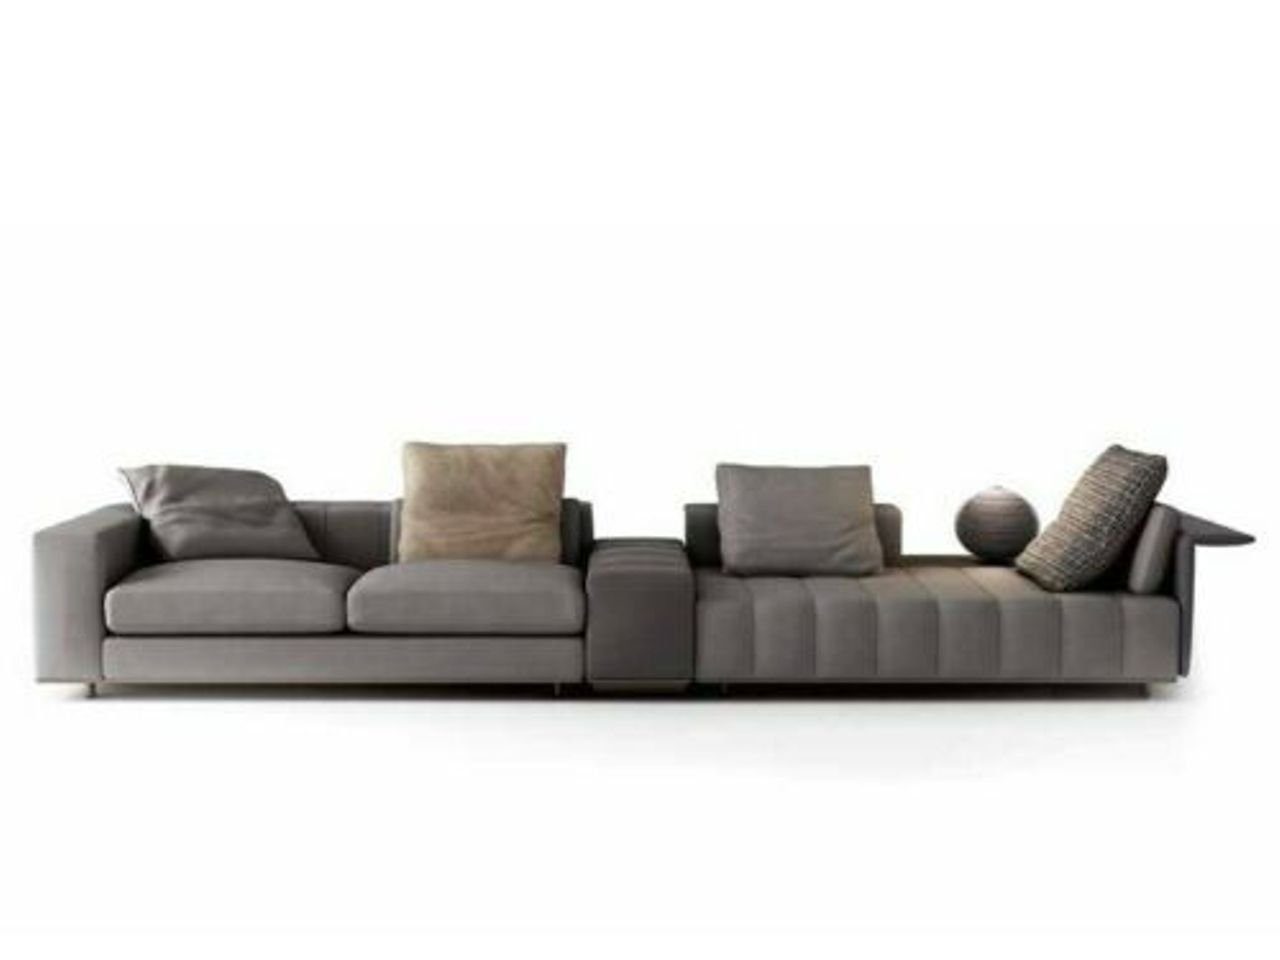 Eck Big Chaiselounge Silber 2 JVmoebel + Luxus Leder Sofa Eckcouchen Wohnzimmer-Set, Sitzer Polster